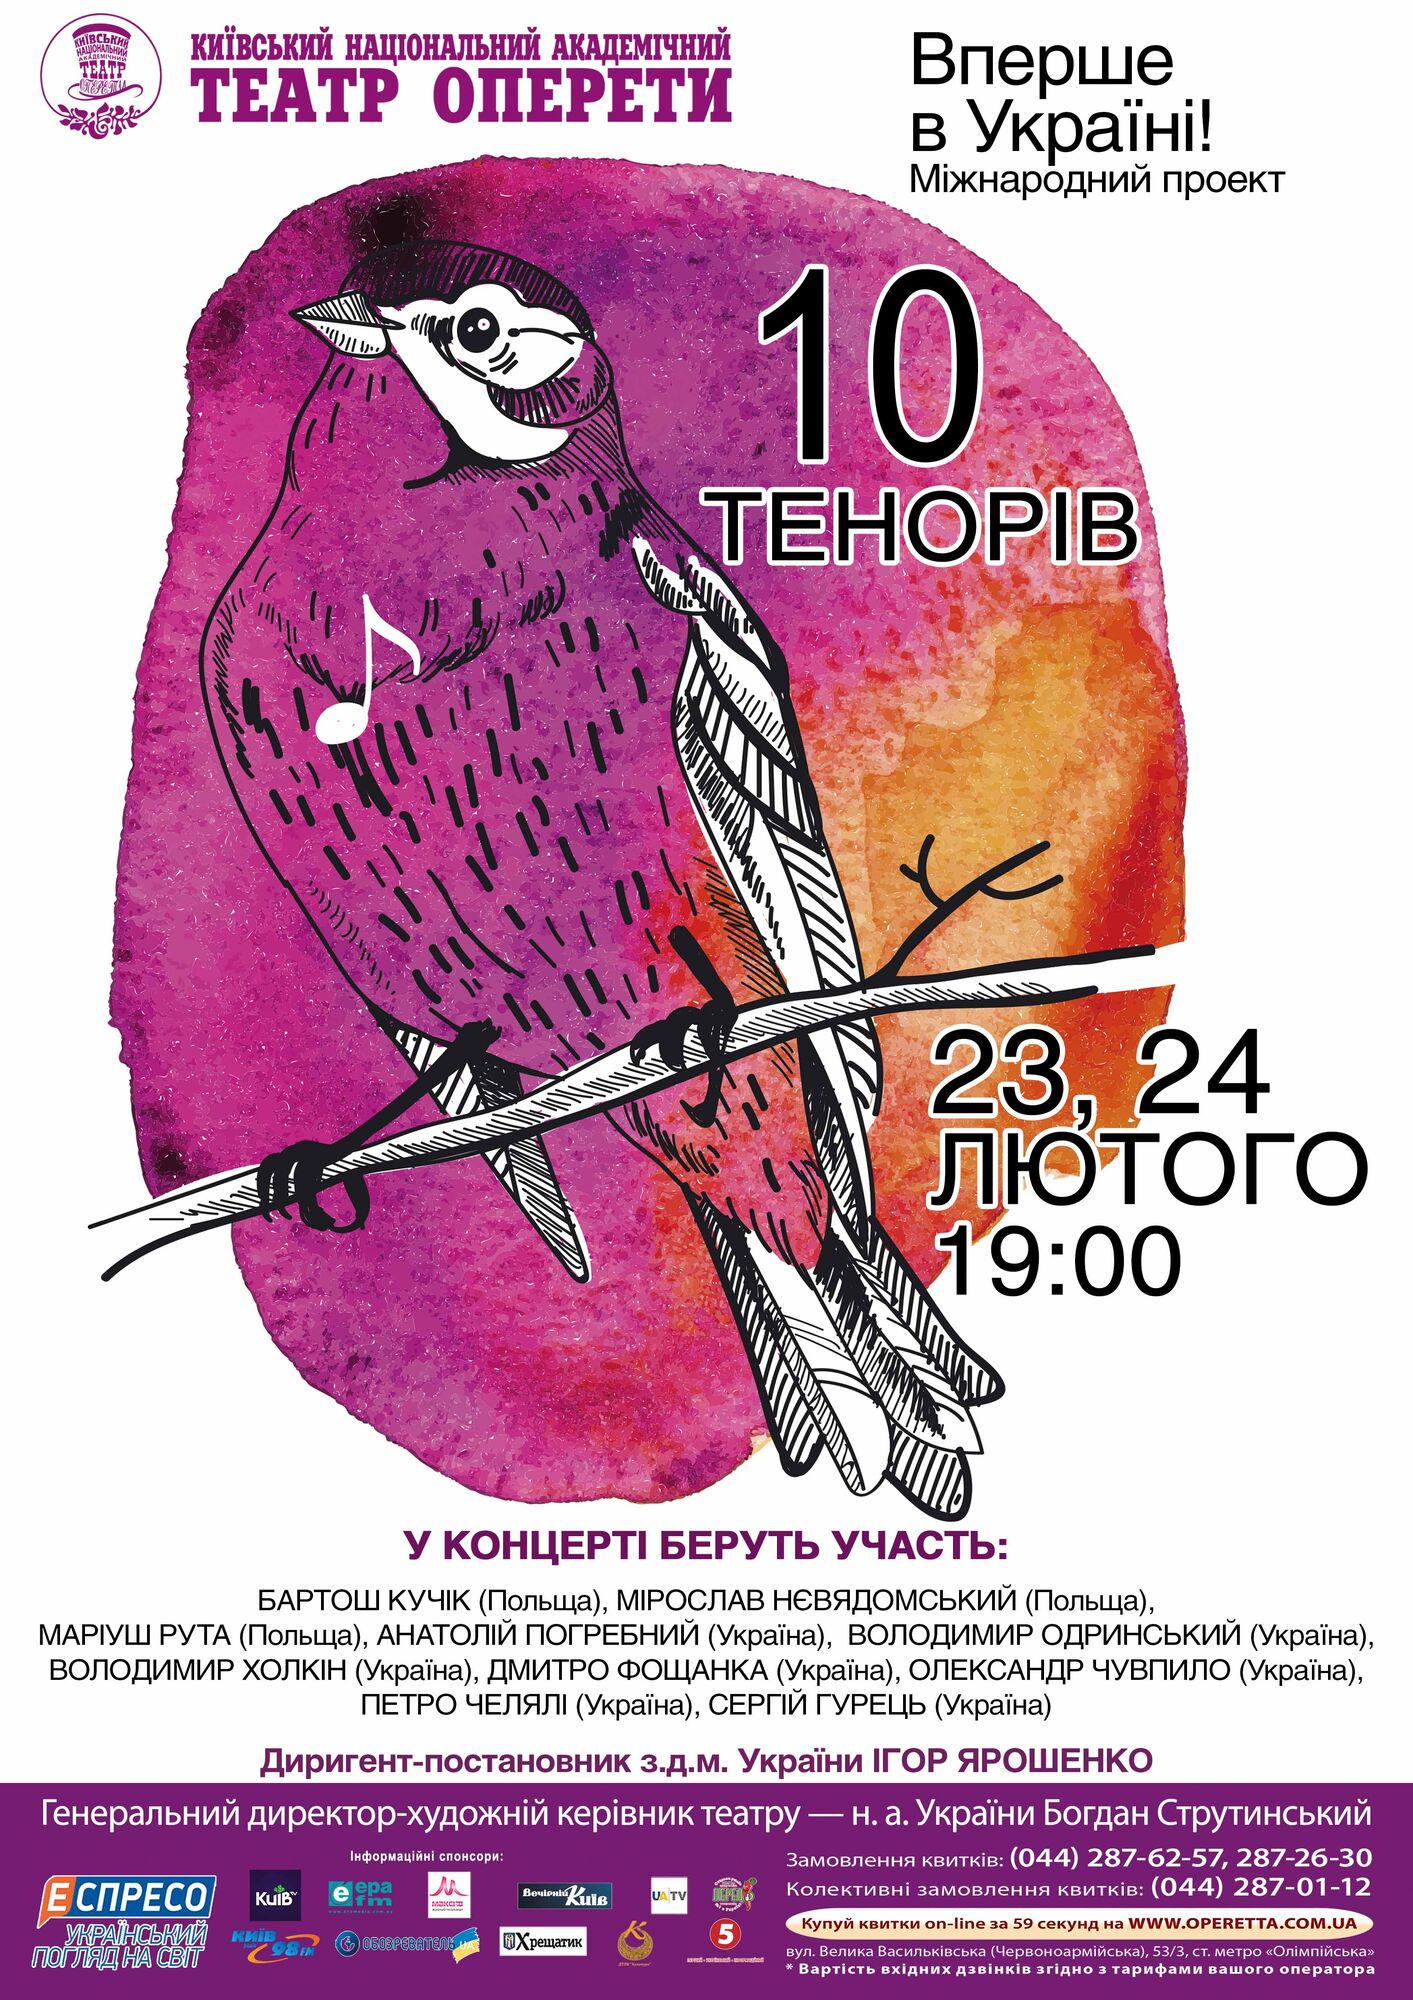 Впервые в Украине: 23 и 24 февраля в Национальной оперетте состоится уникальный концерт "10 ТЕНОРОВ"